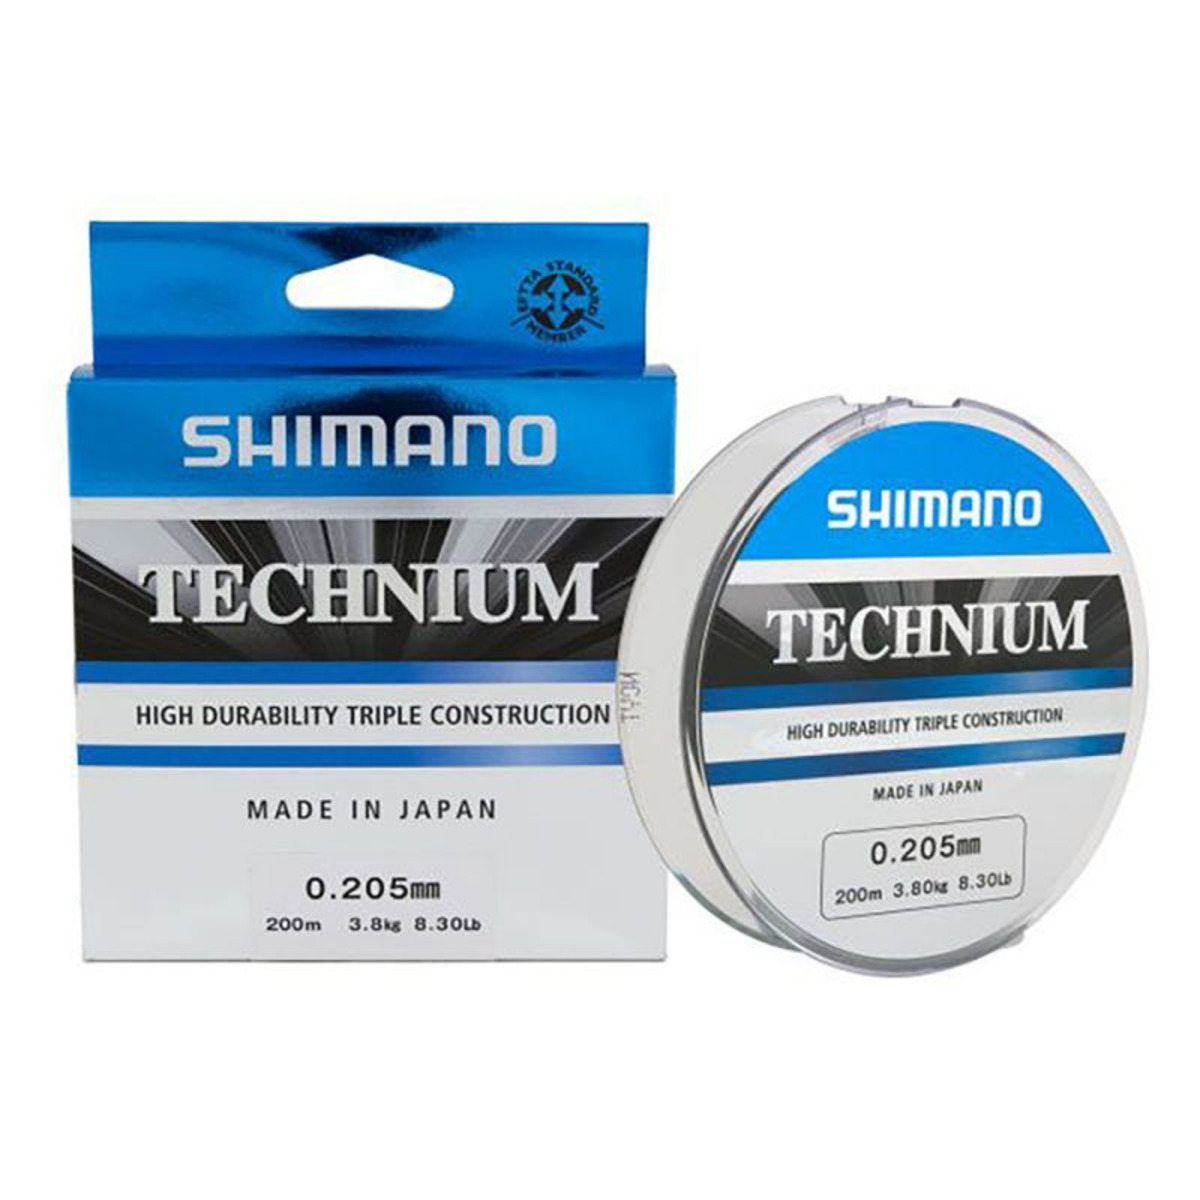 Shimano Technium 200 m - 200 m - 0.205 mm